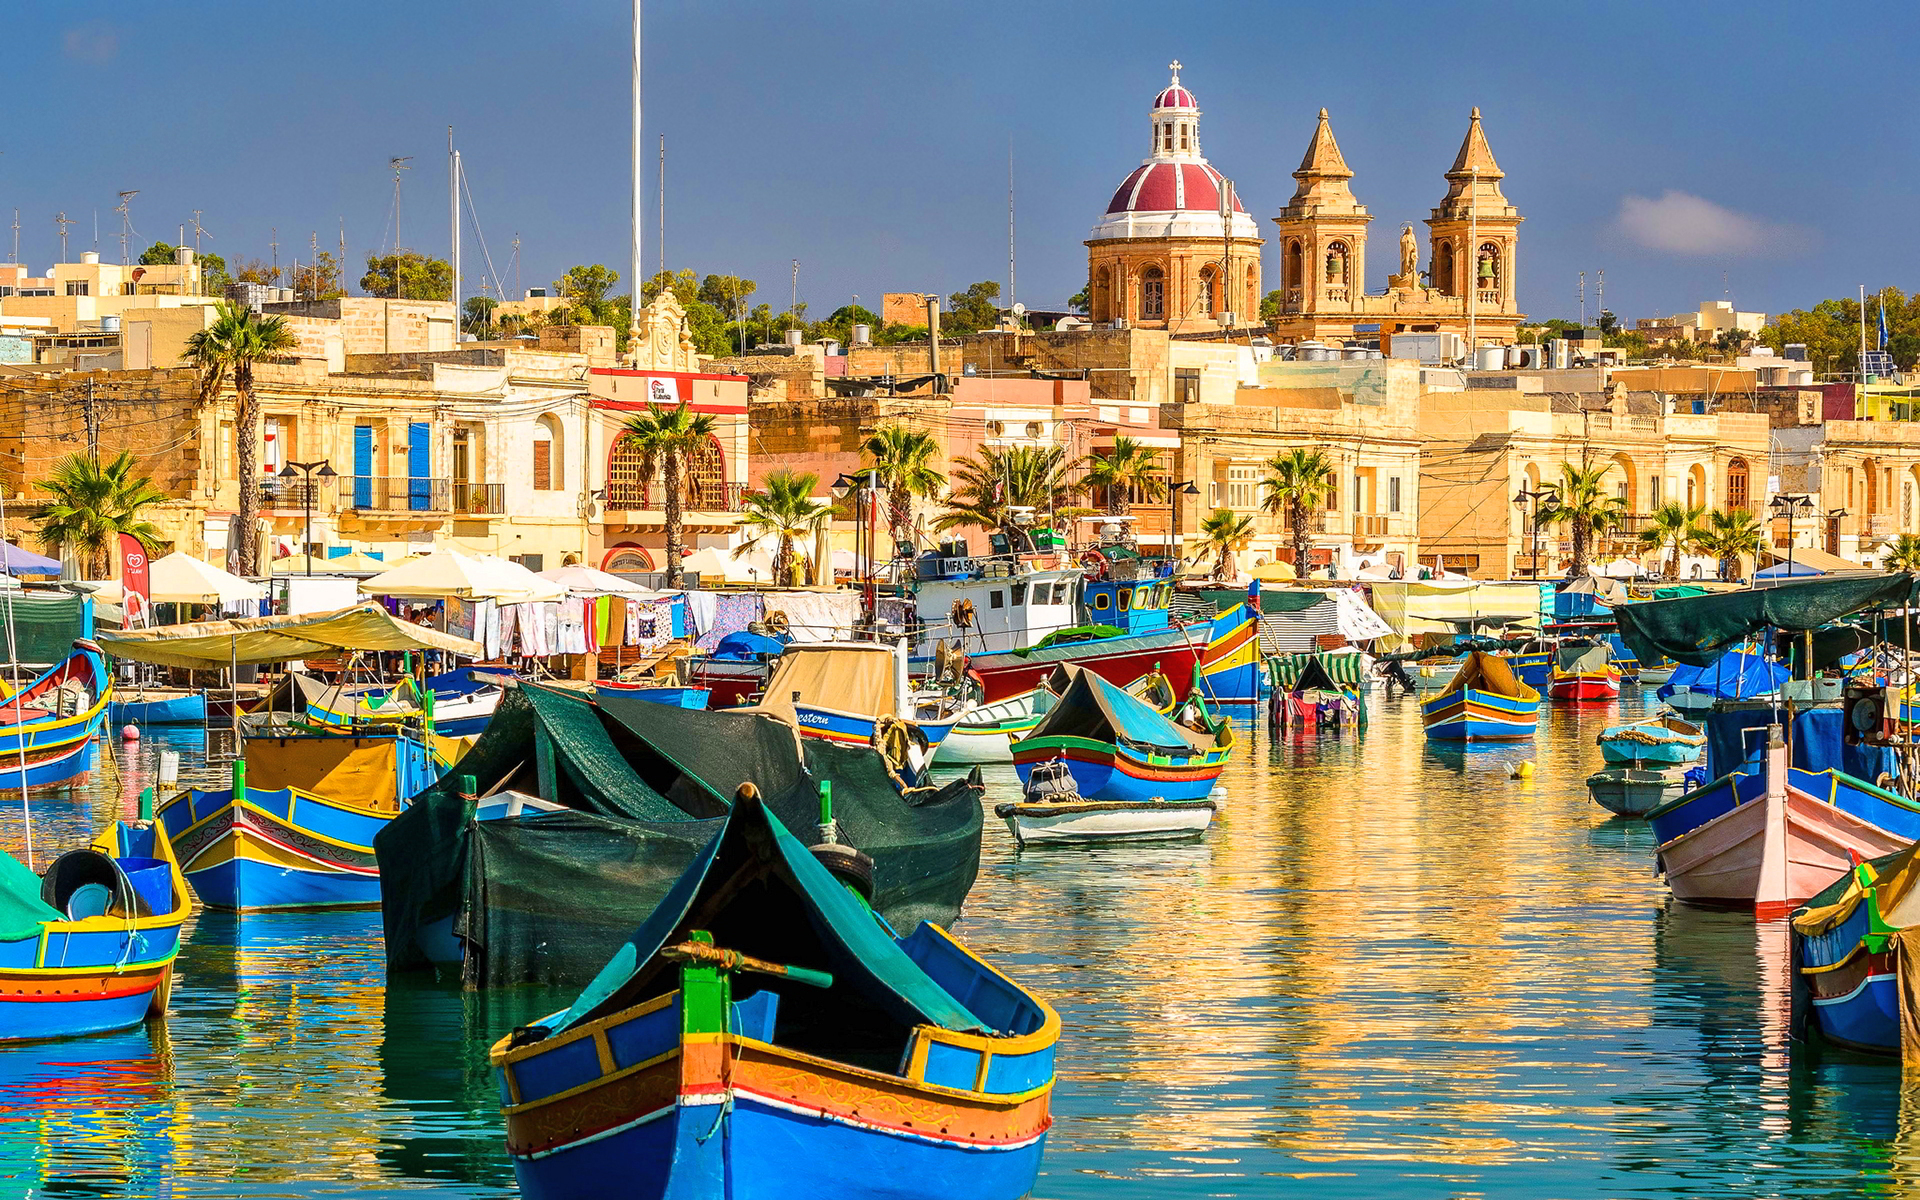 Παραθαλάσσιες πόλεις της Μεσογείου βγαλμένες από παραμύθια… Tις ήξερες;